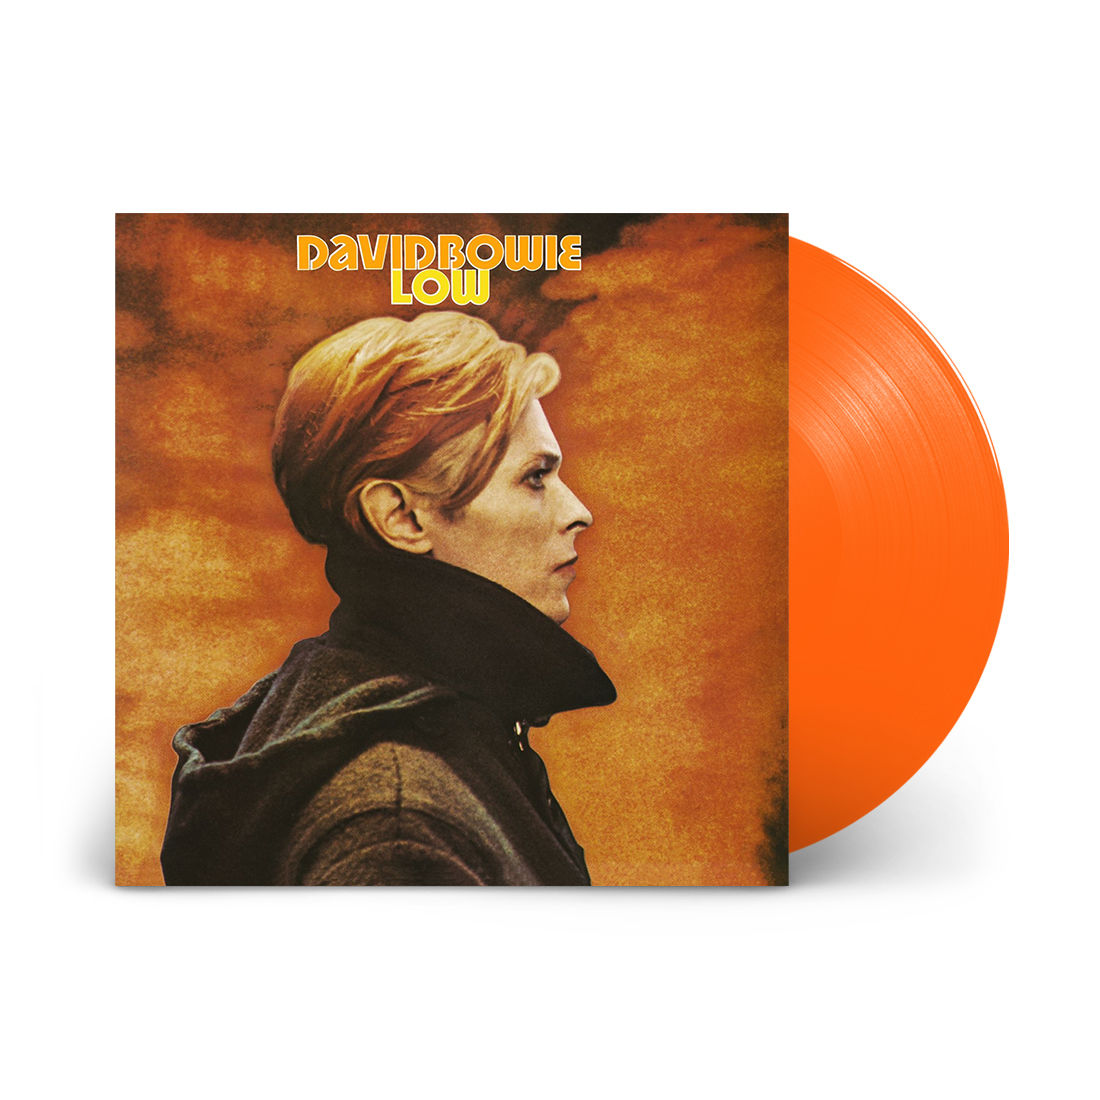 David Bowie - Low: Limited Edition Orange Vinyl LP